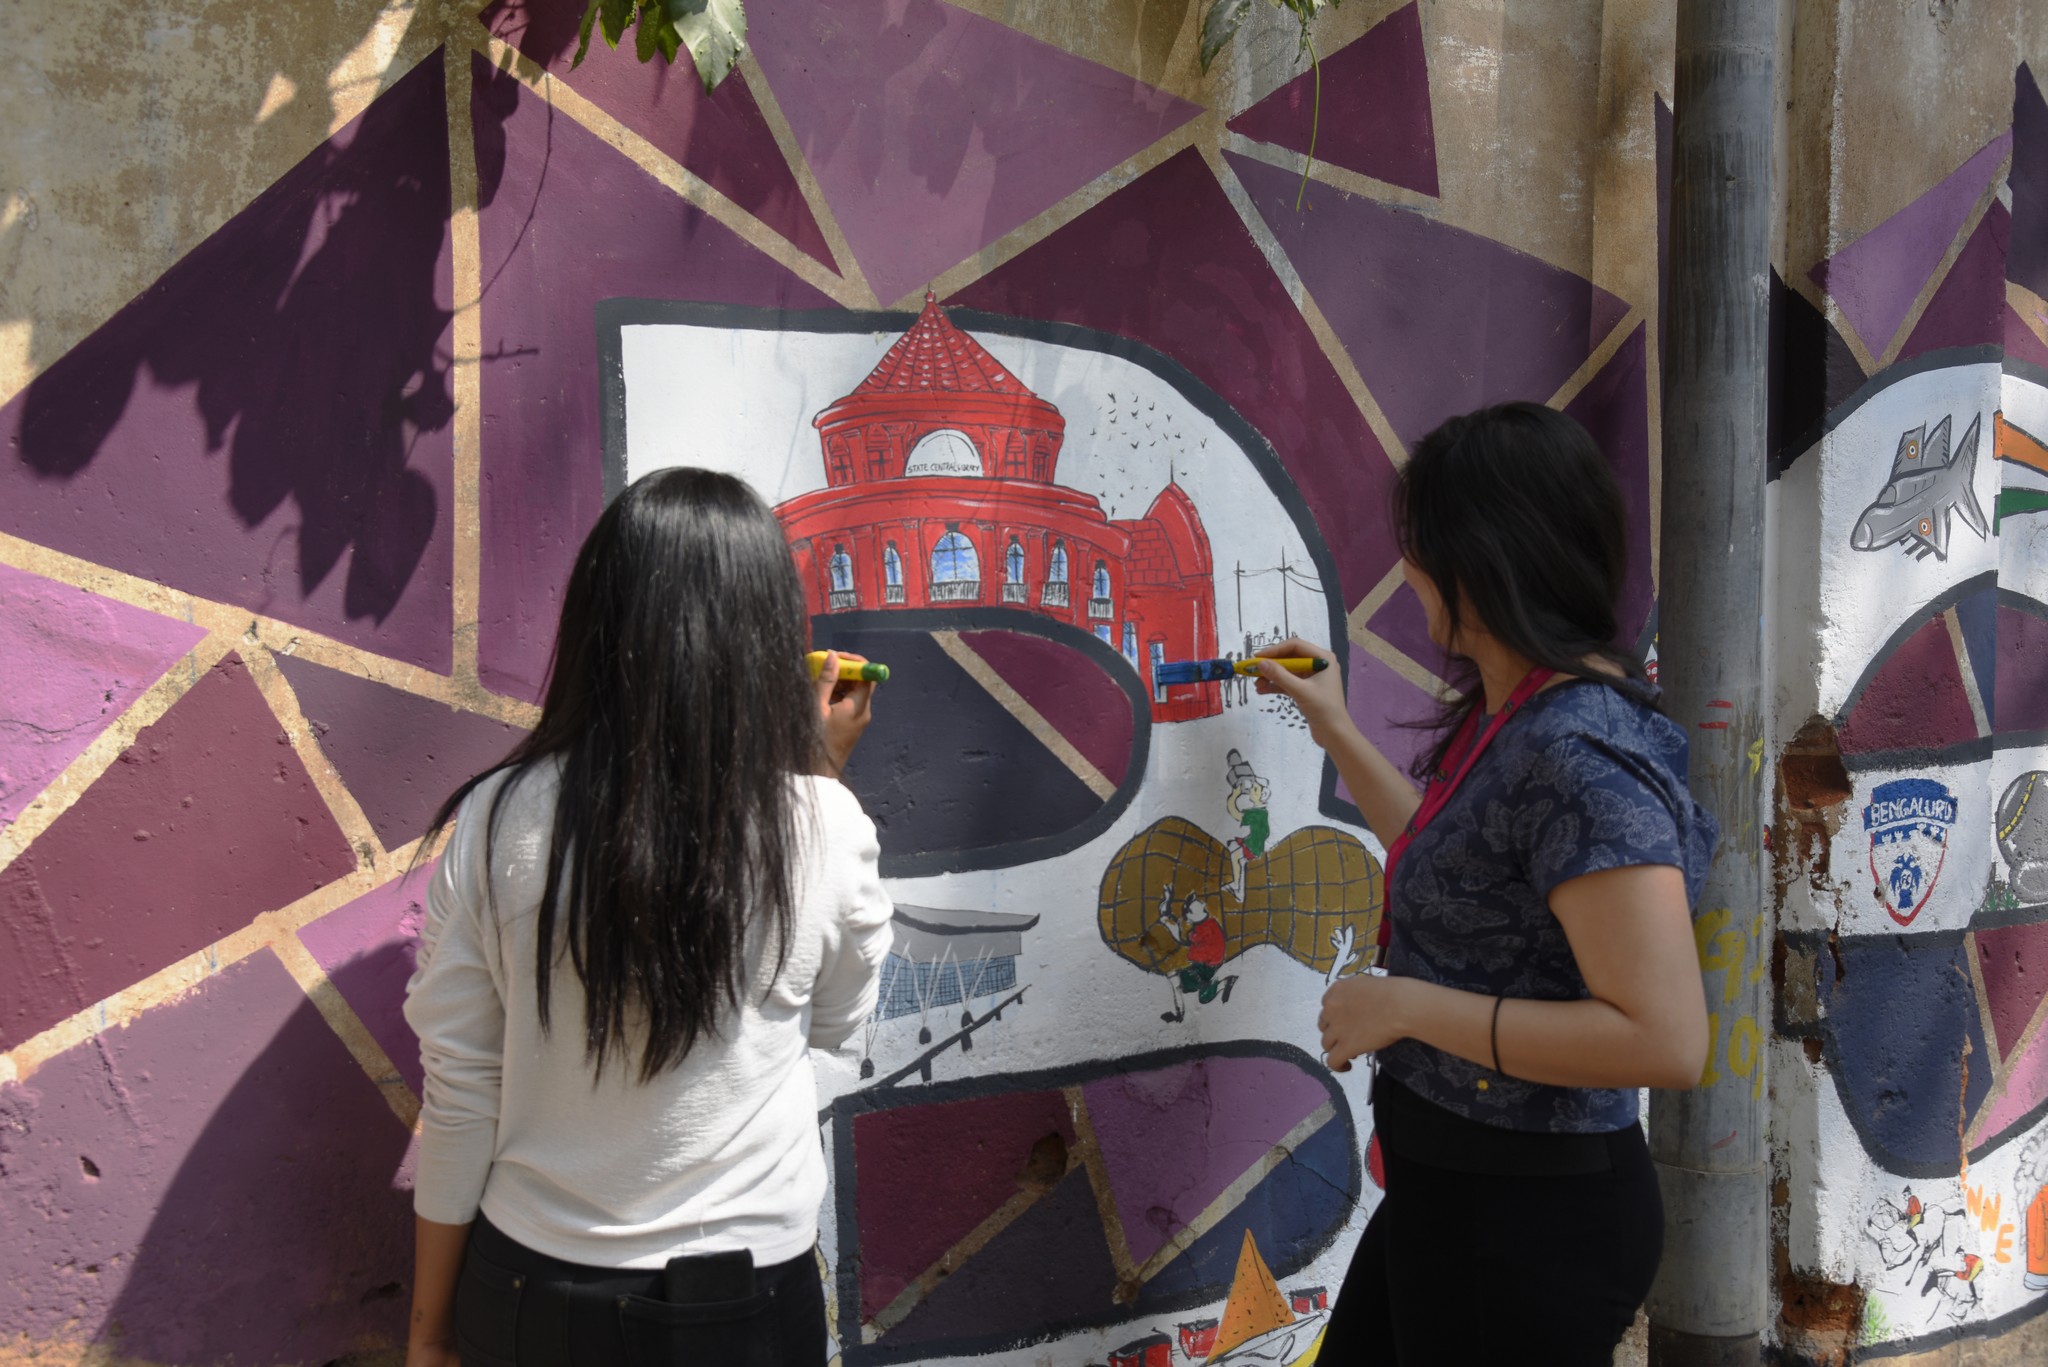 Namma Bengaluru – Wall art by students of JD Institute namma bengaluru - Namma Bengaluru 3 - Namma Bengaluru – Wall art by students of JD Institute